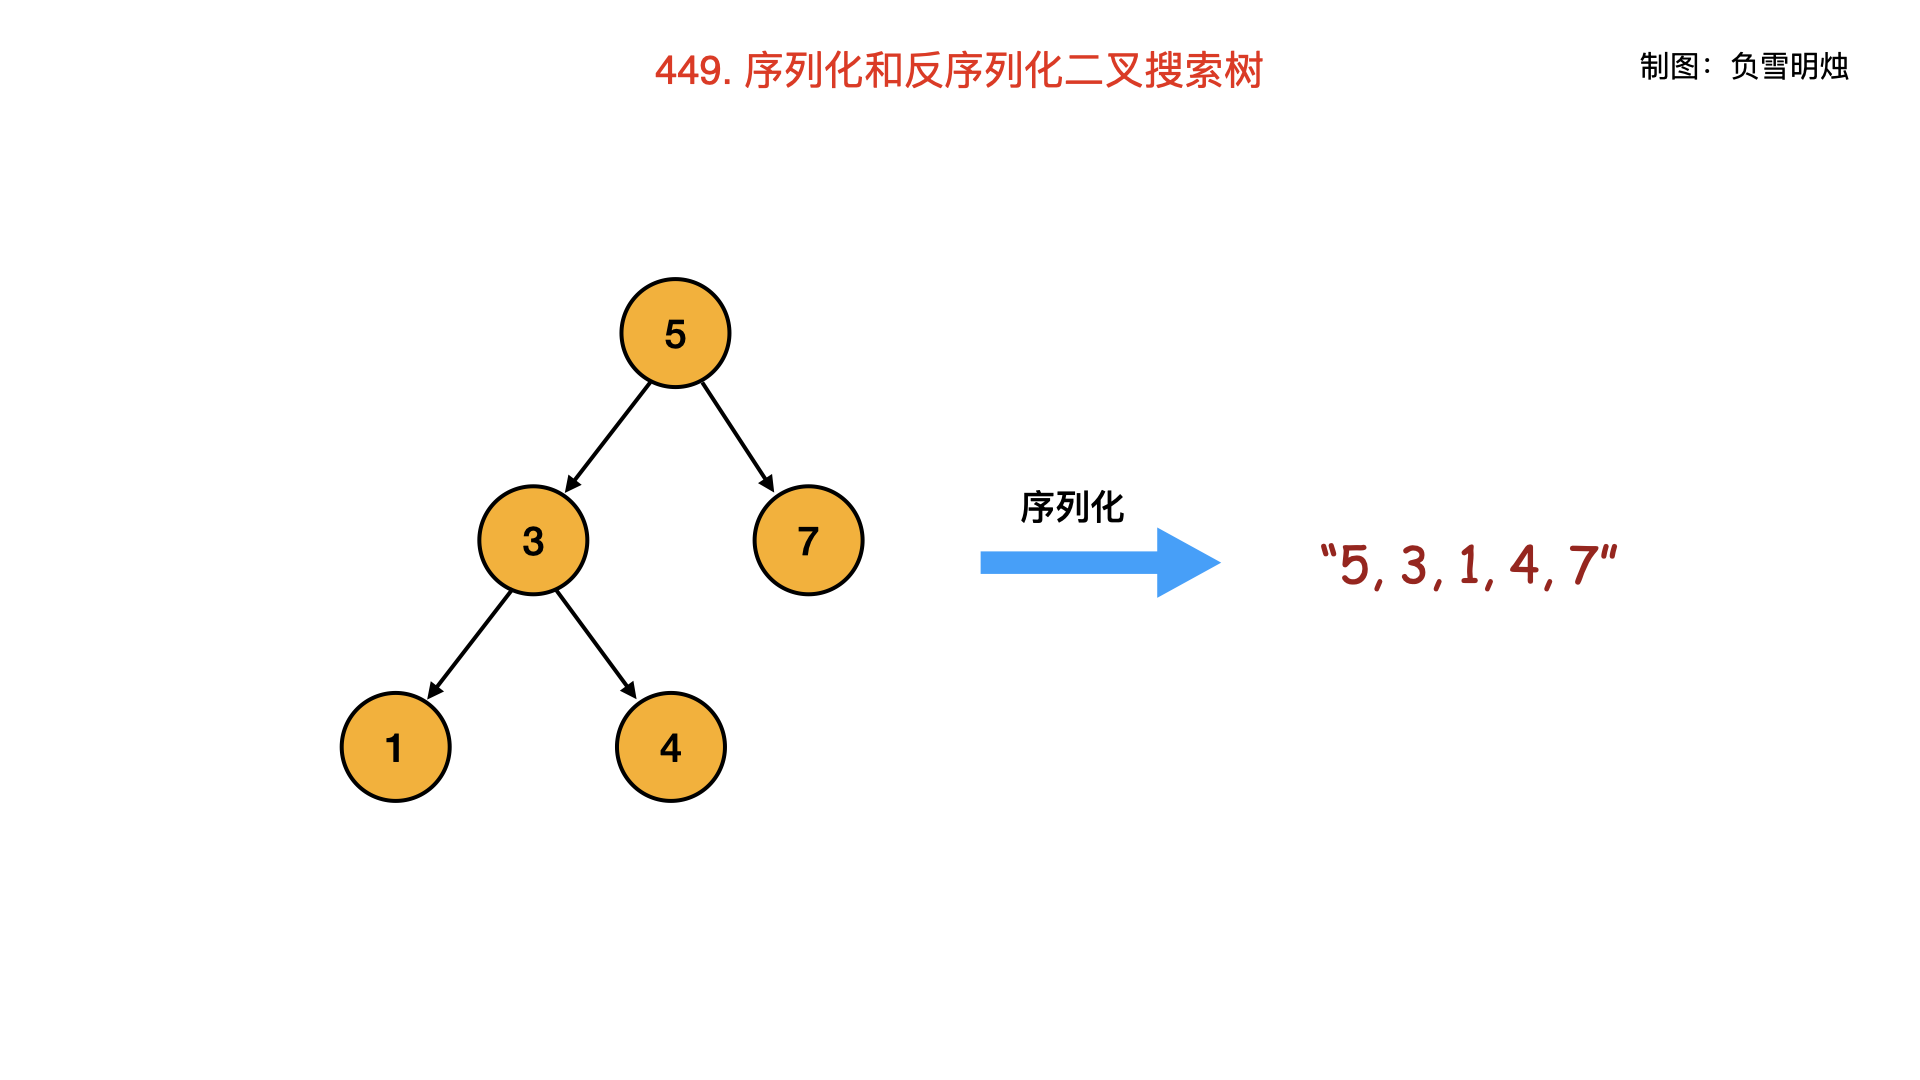 449. 序列化和反序列化二叉搜索树.002.png